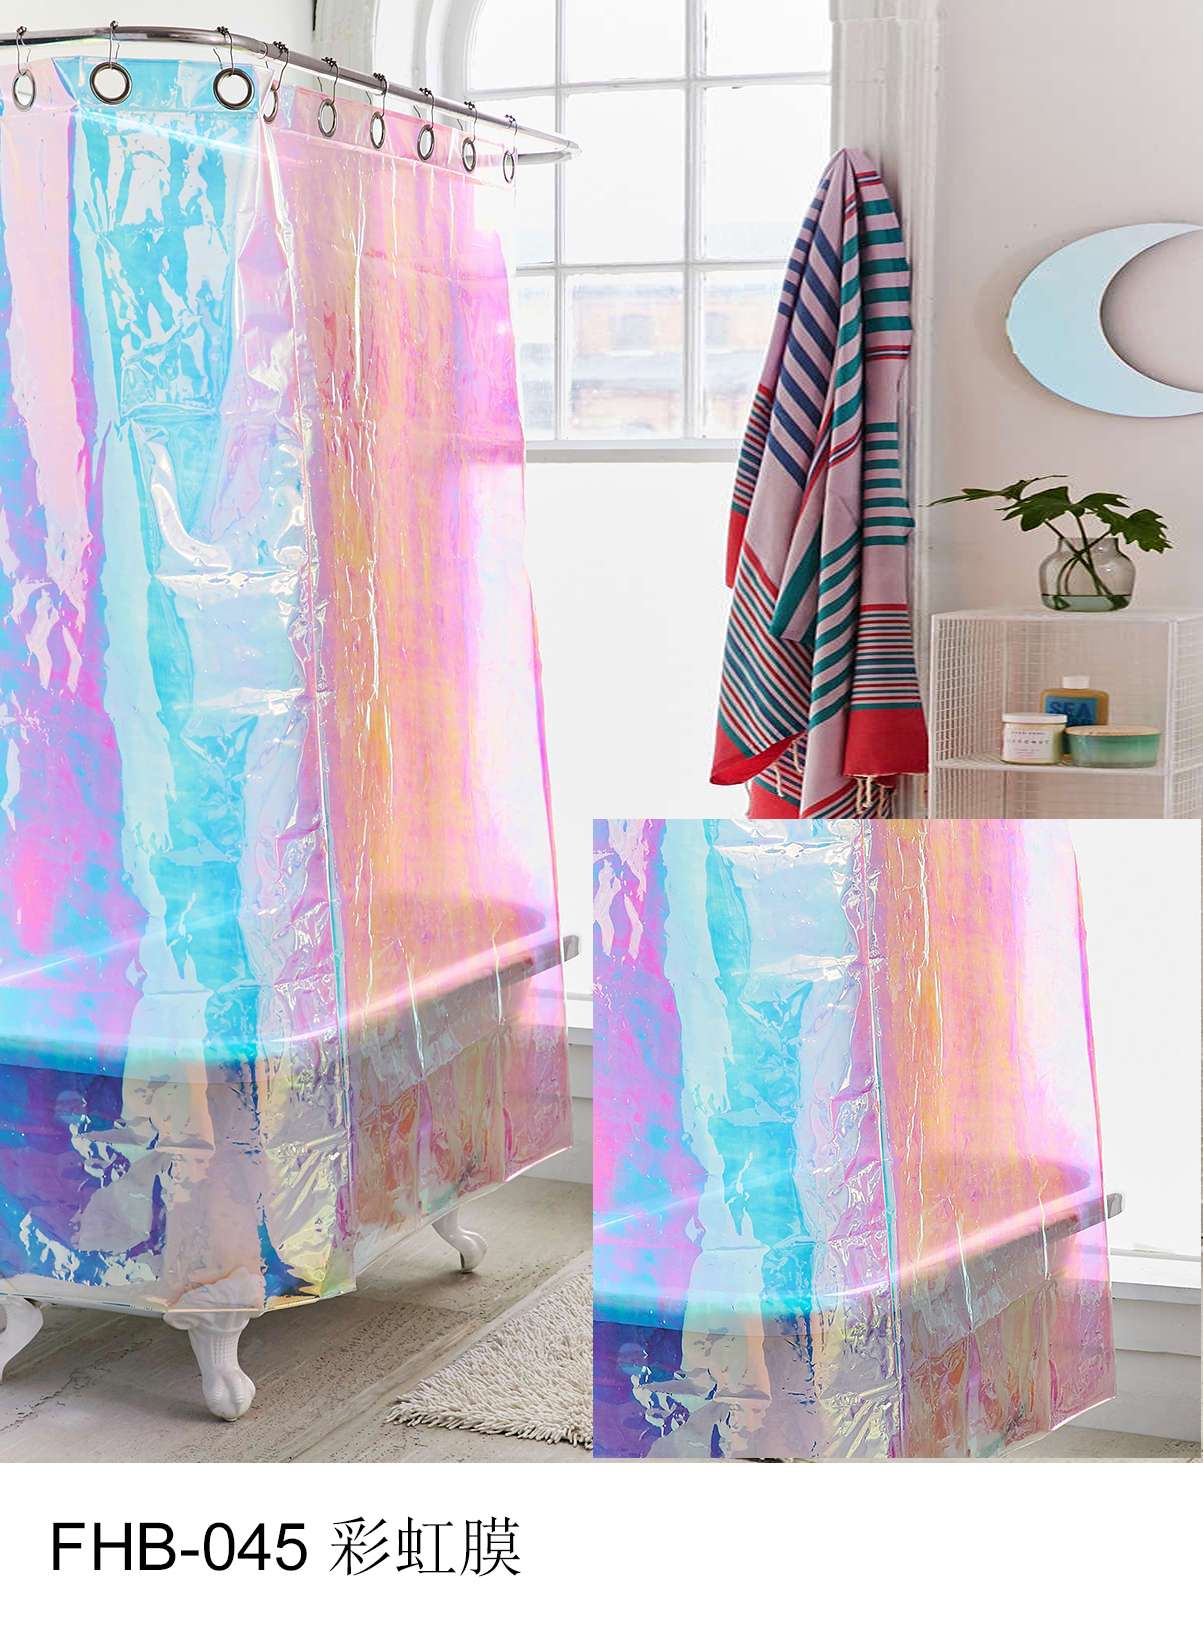 3D Shower Curtain